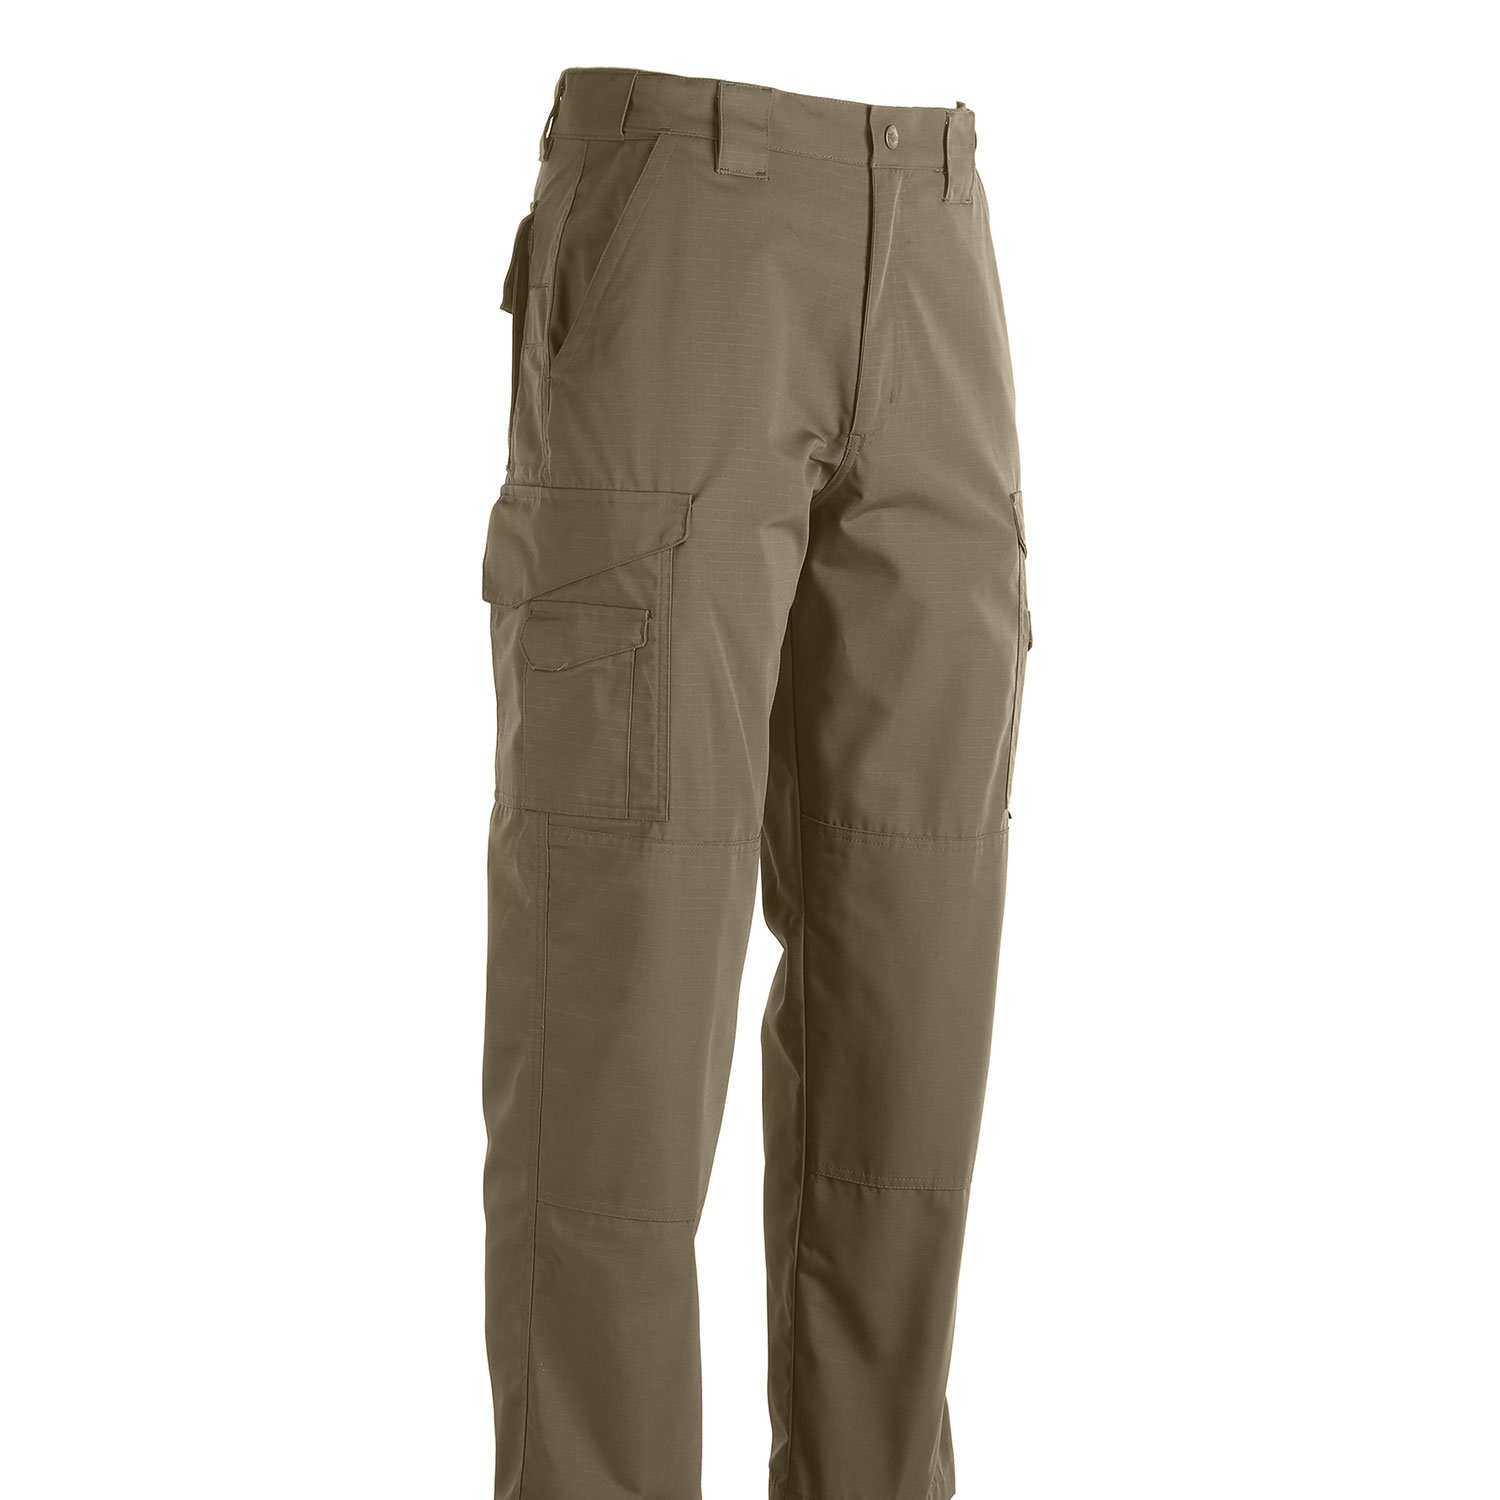 Tru-Spec 24-7 Ripstop Pants